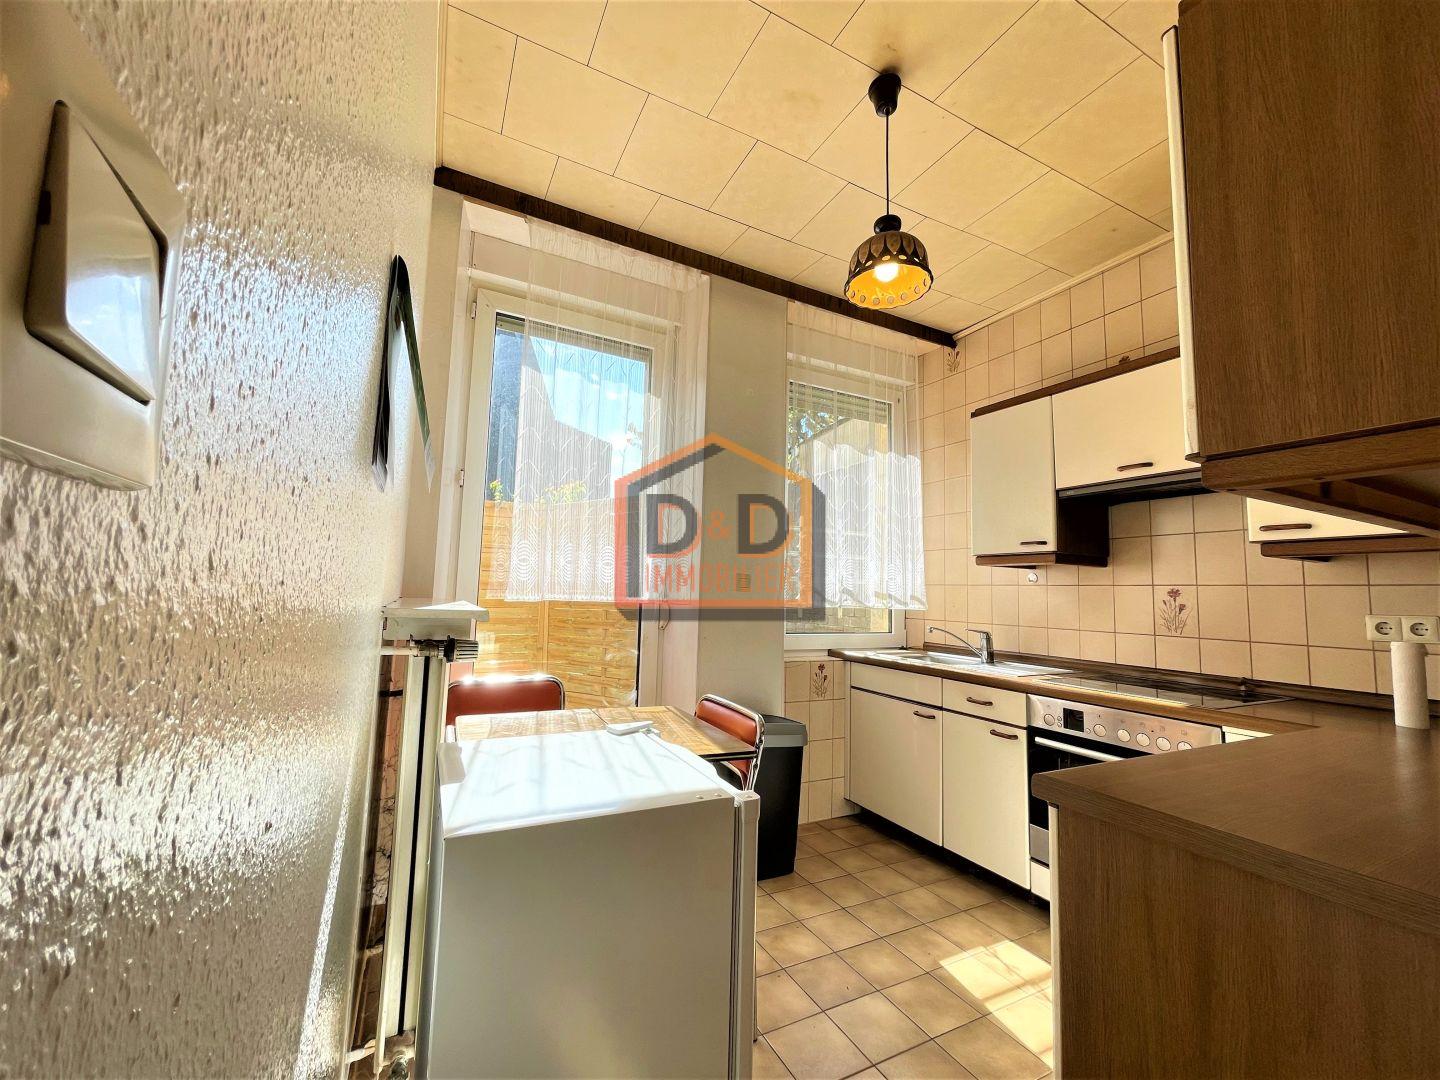 Appartement à Niederkorn, 40 m², 1 chambre, 1 salle de bain, 1 200 €/mois